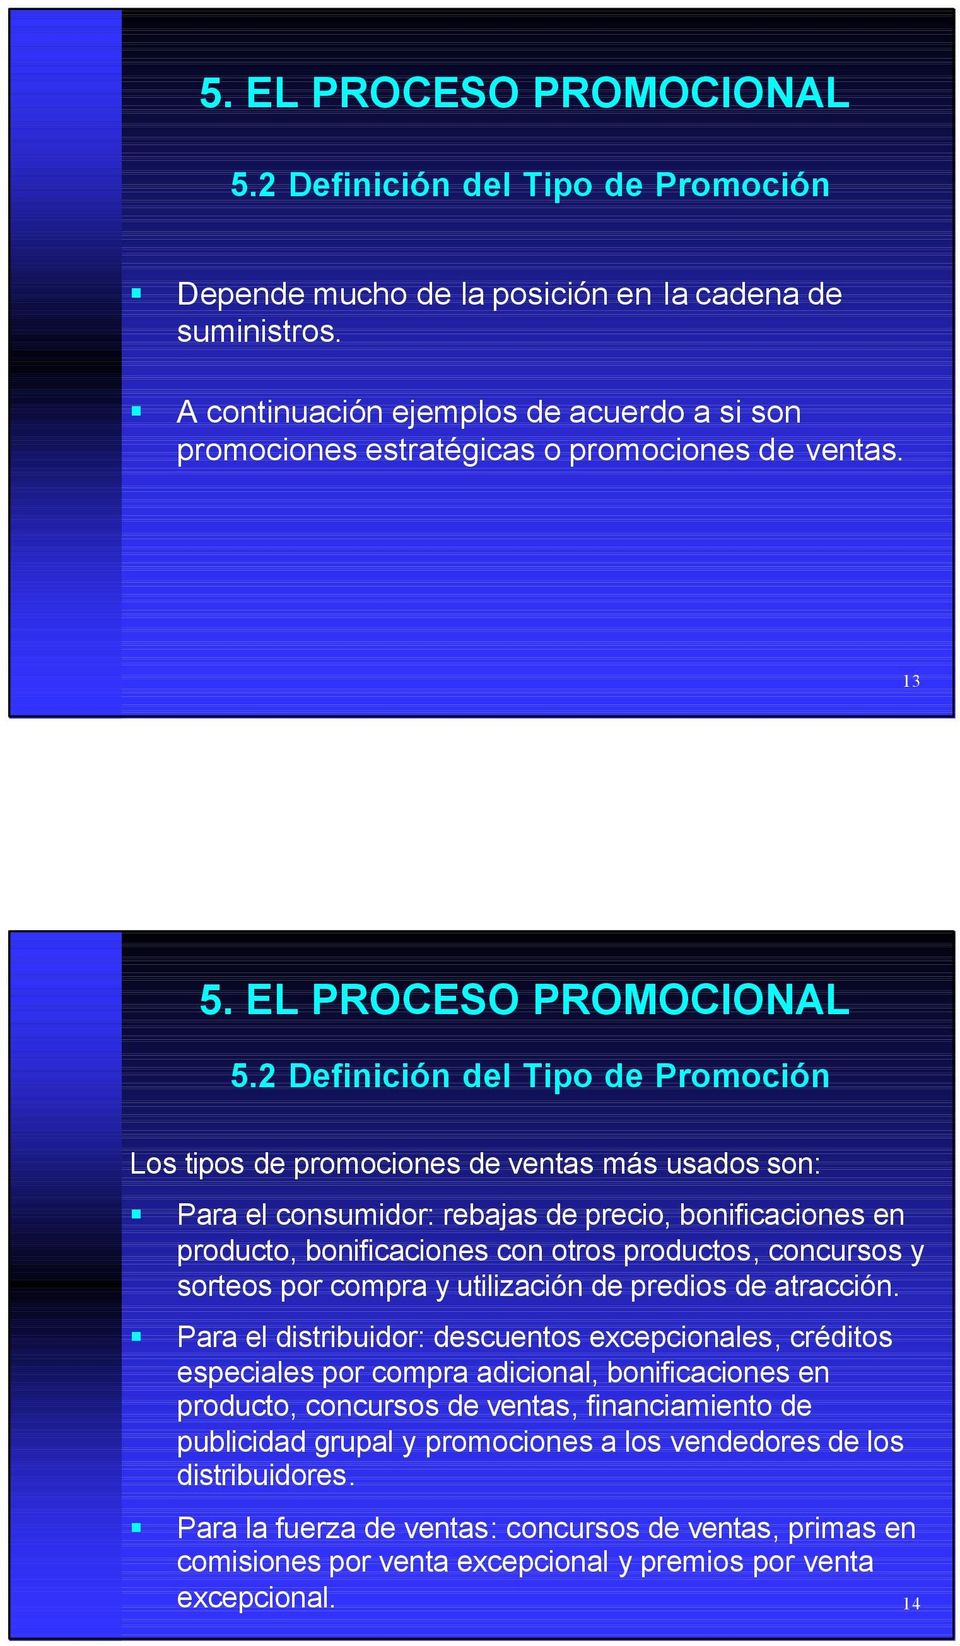 2 Definición del Tipo de Promoción Los tipos de promociones de ventas más usados son: Para el consumidor: rebajas de precio, bonificaciones en producto, bonificaciones con otros productos, concursos